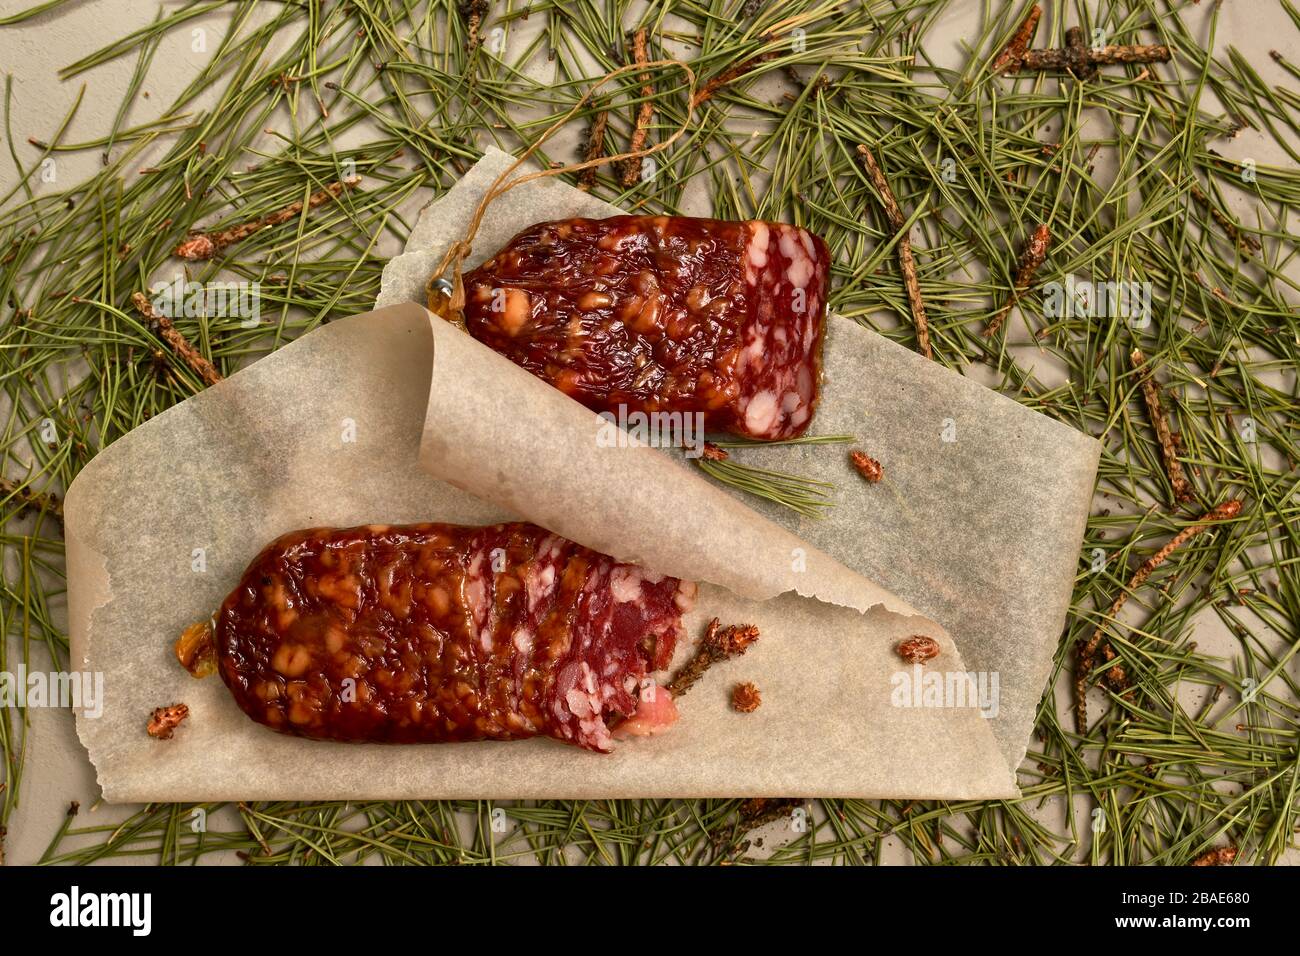 Saucisse séchée faite de viande de castor sur parchemin avec des bourgeons de pin au fond. Parquet en aiguilles de pin. Banque D'Images